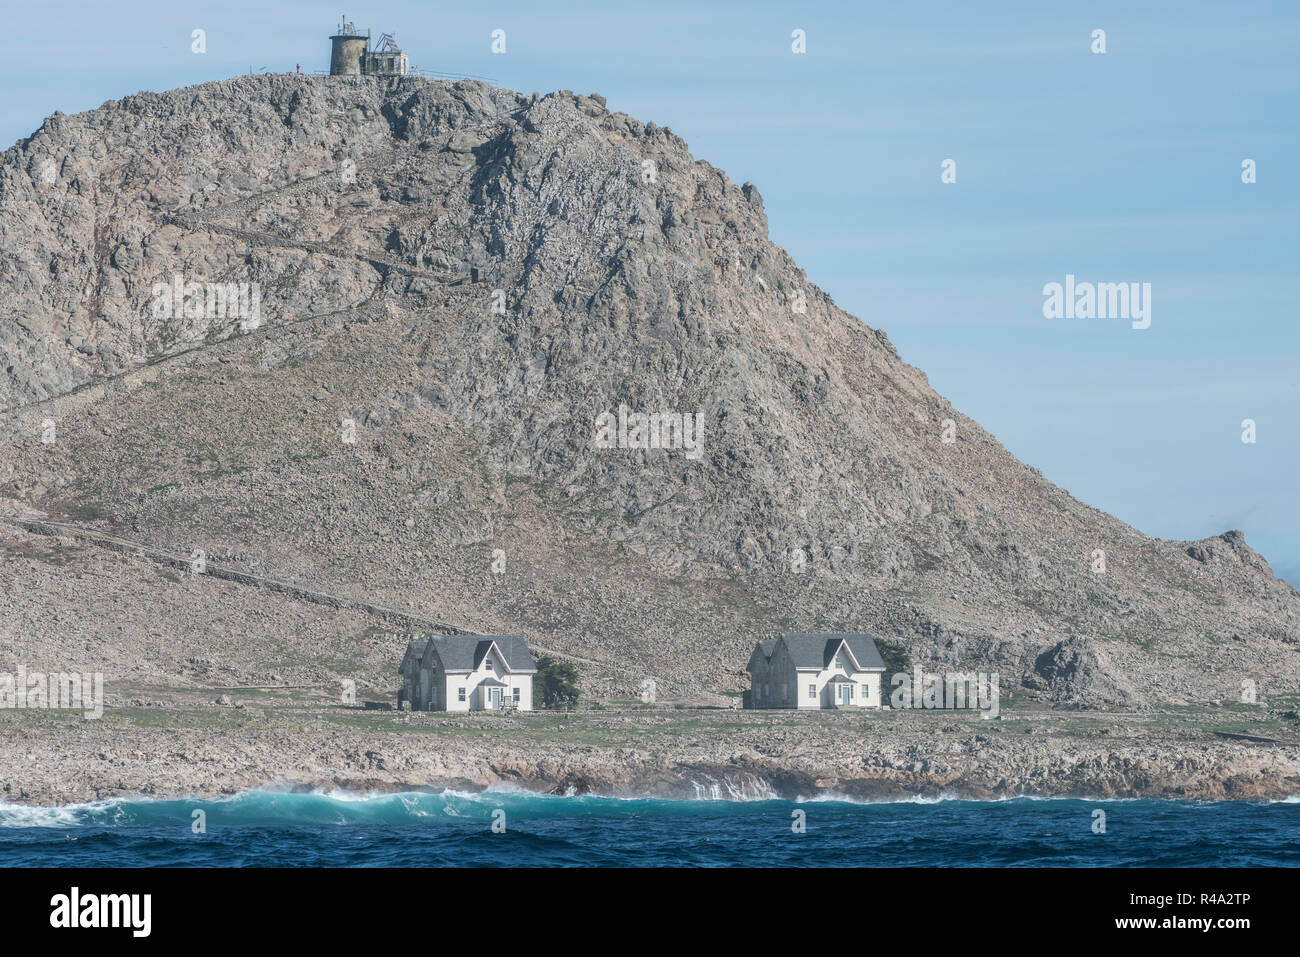 L'unico edificio sul Farallon isole sono queste piccole case bianche dove gli scienziati in visita il sonno e il faro sullaparte superiore della collina. Foto Stock